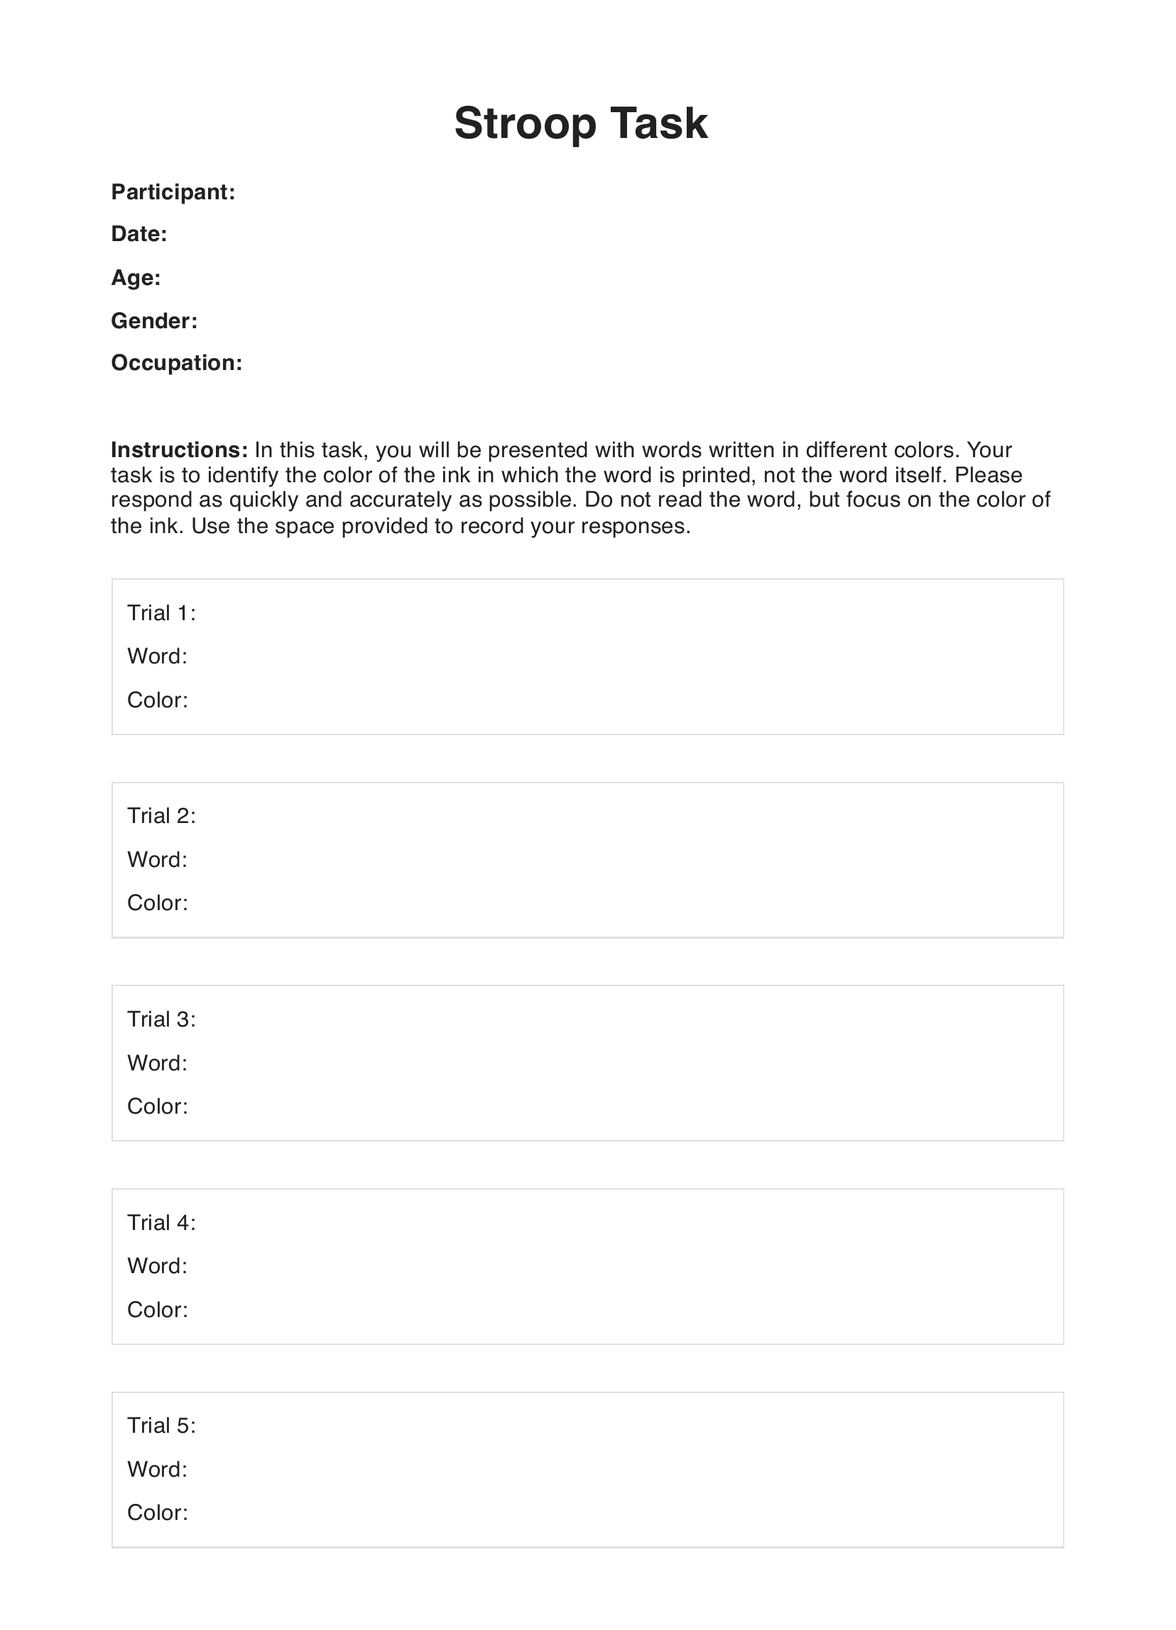 Stroop Tasks PDF Example